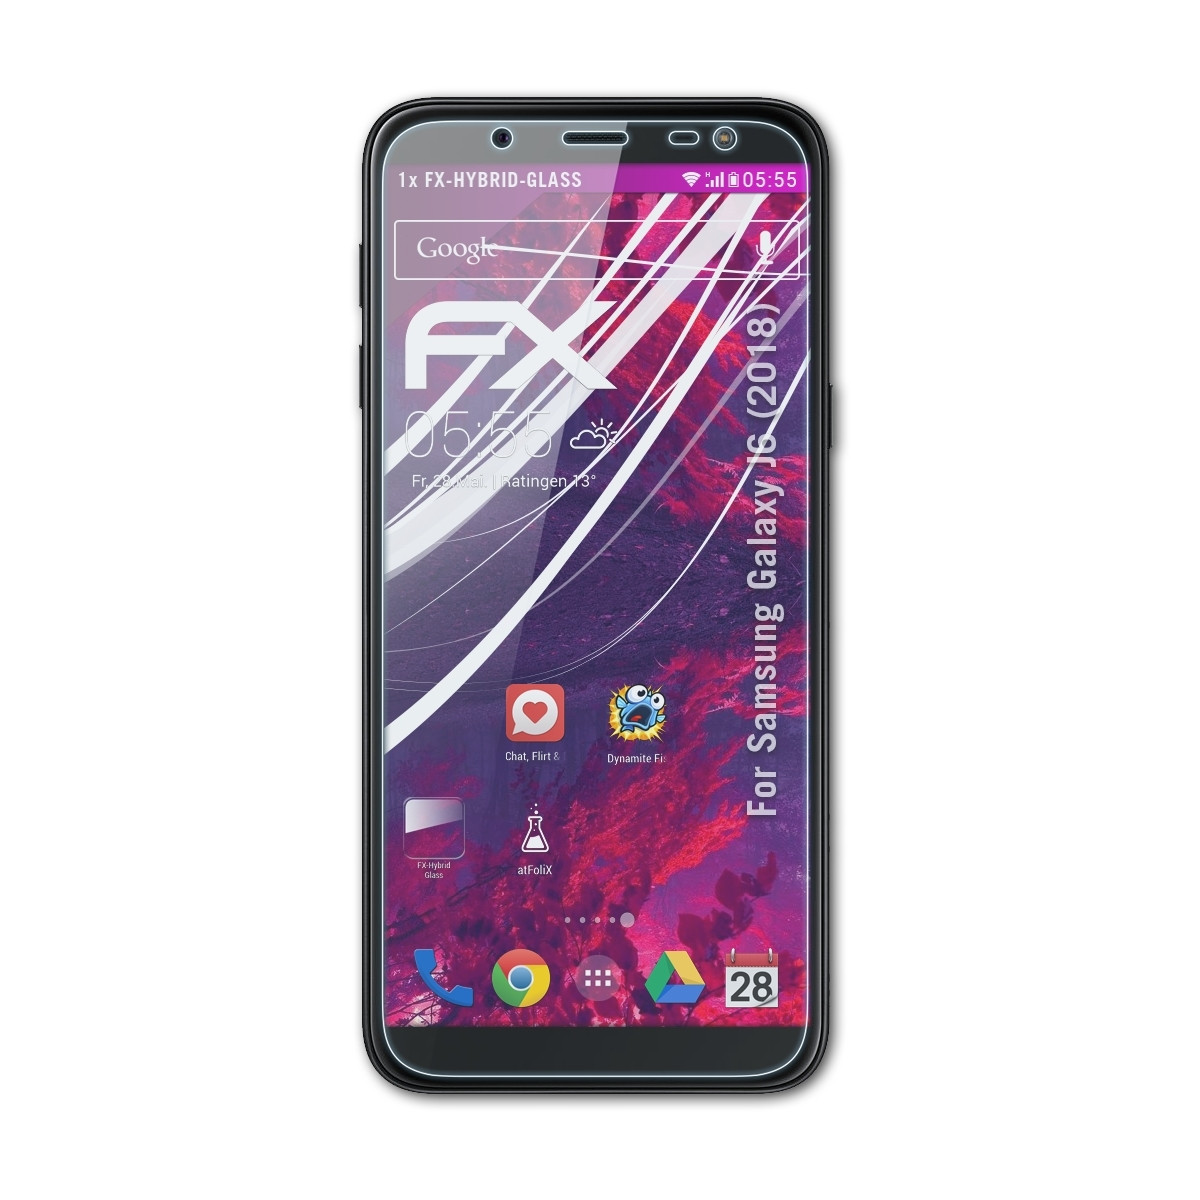 (2018)) J6 Schutzglas(für Samsung ATFOLIX FX-Hybrid-Glass Galaxy